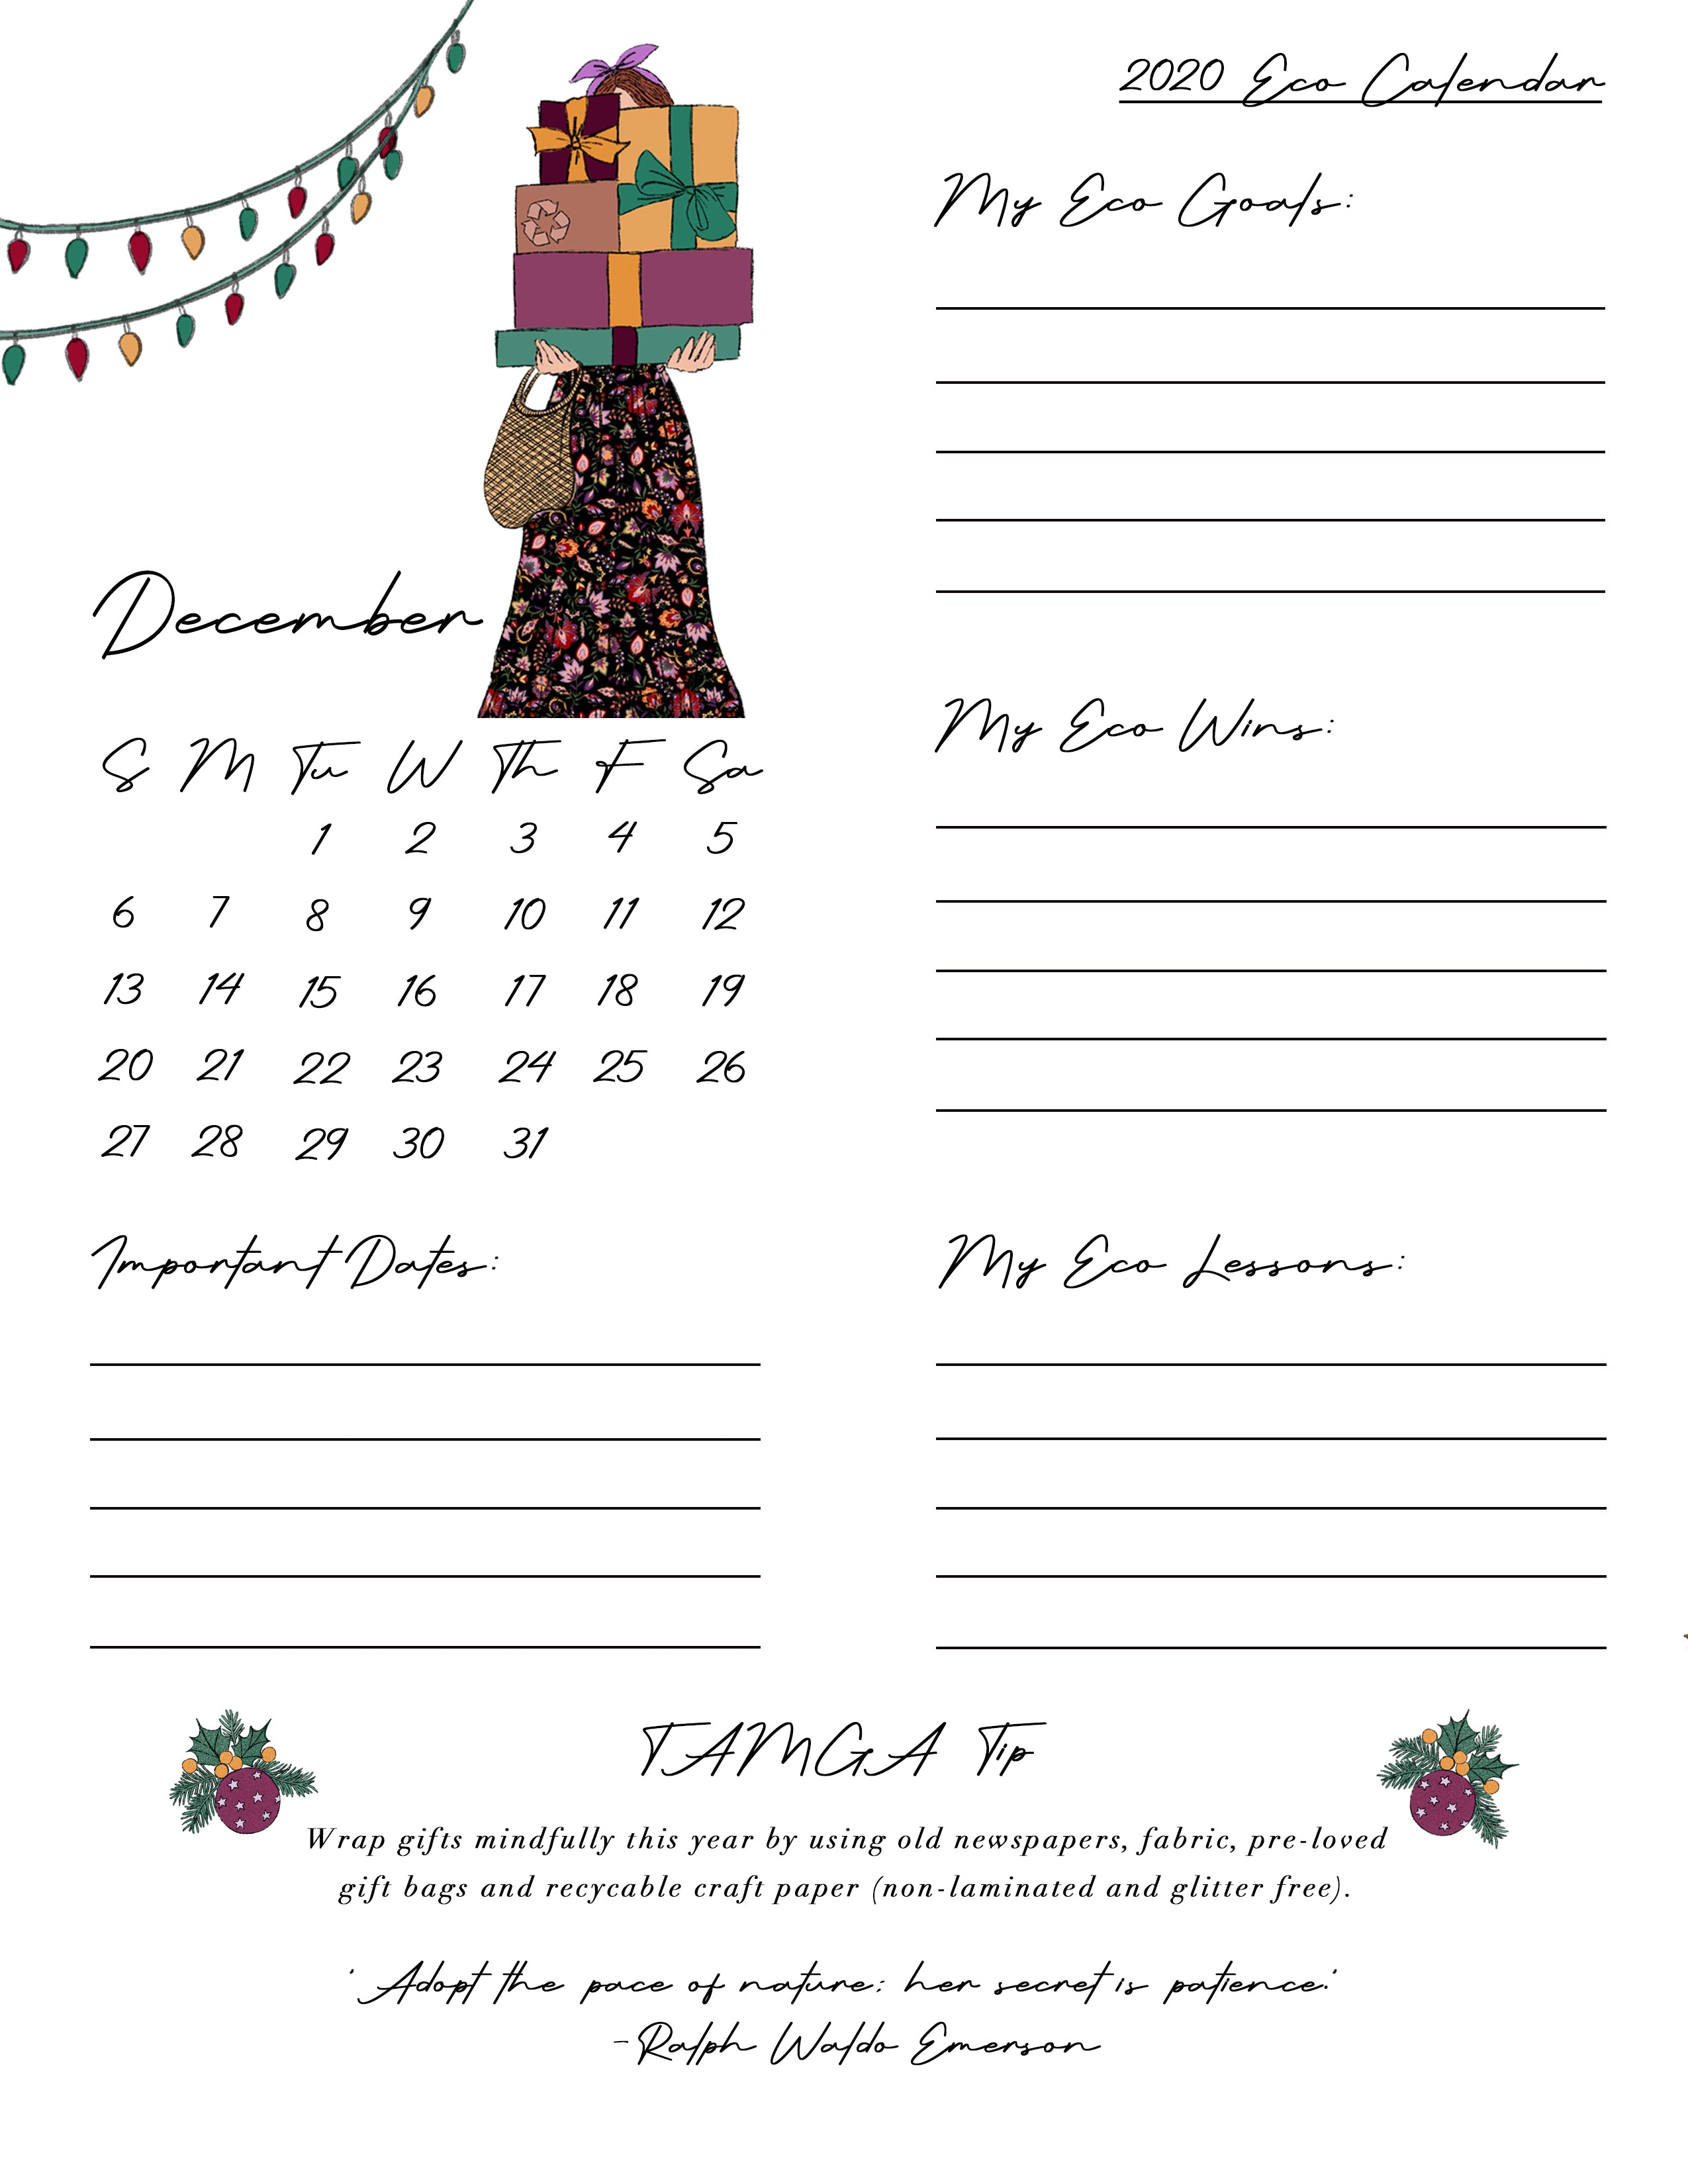 TAMGA December Eco Calendar